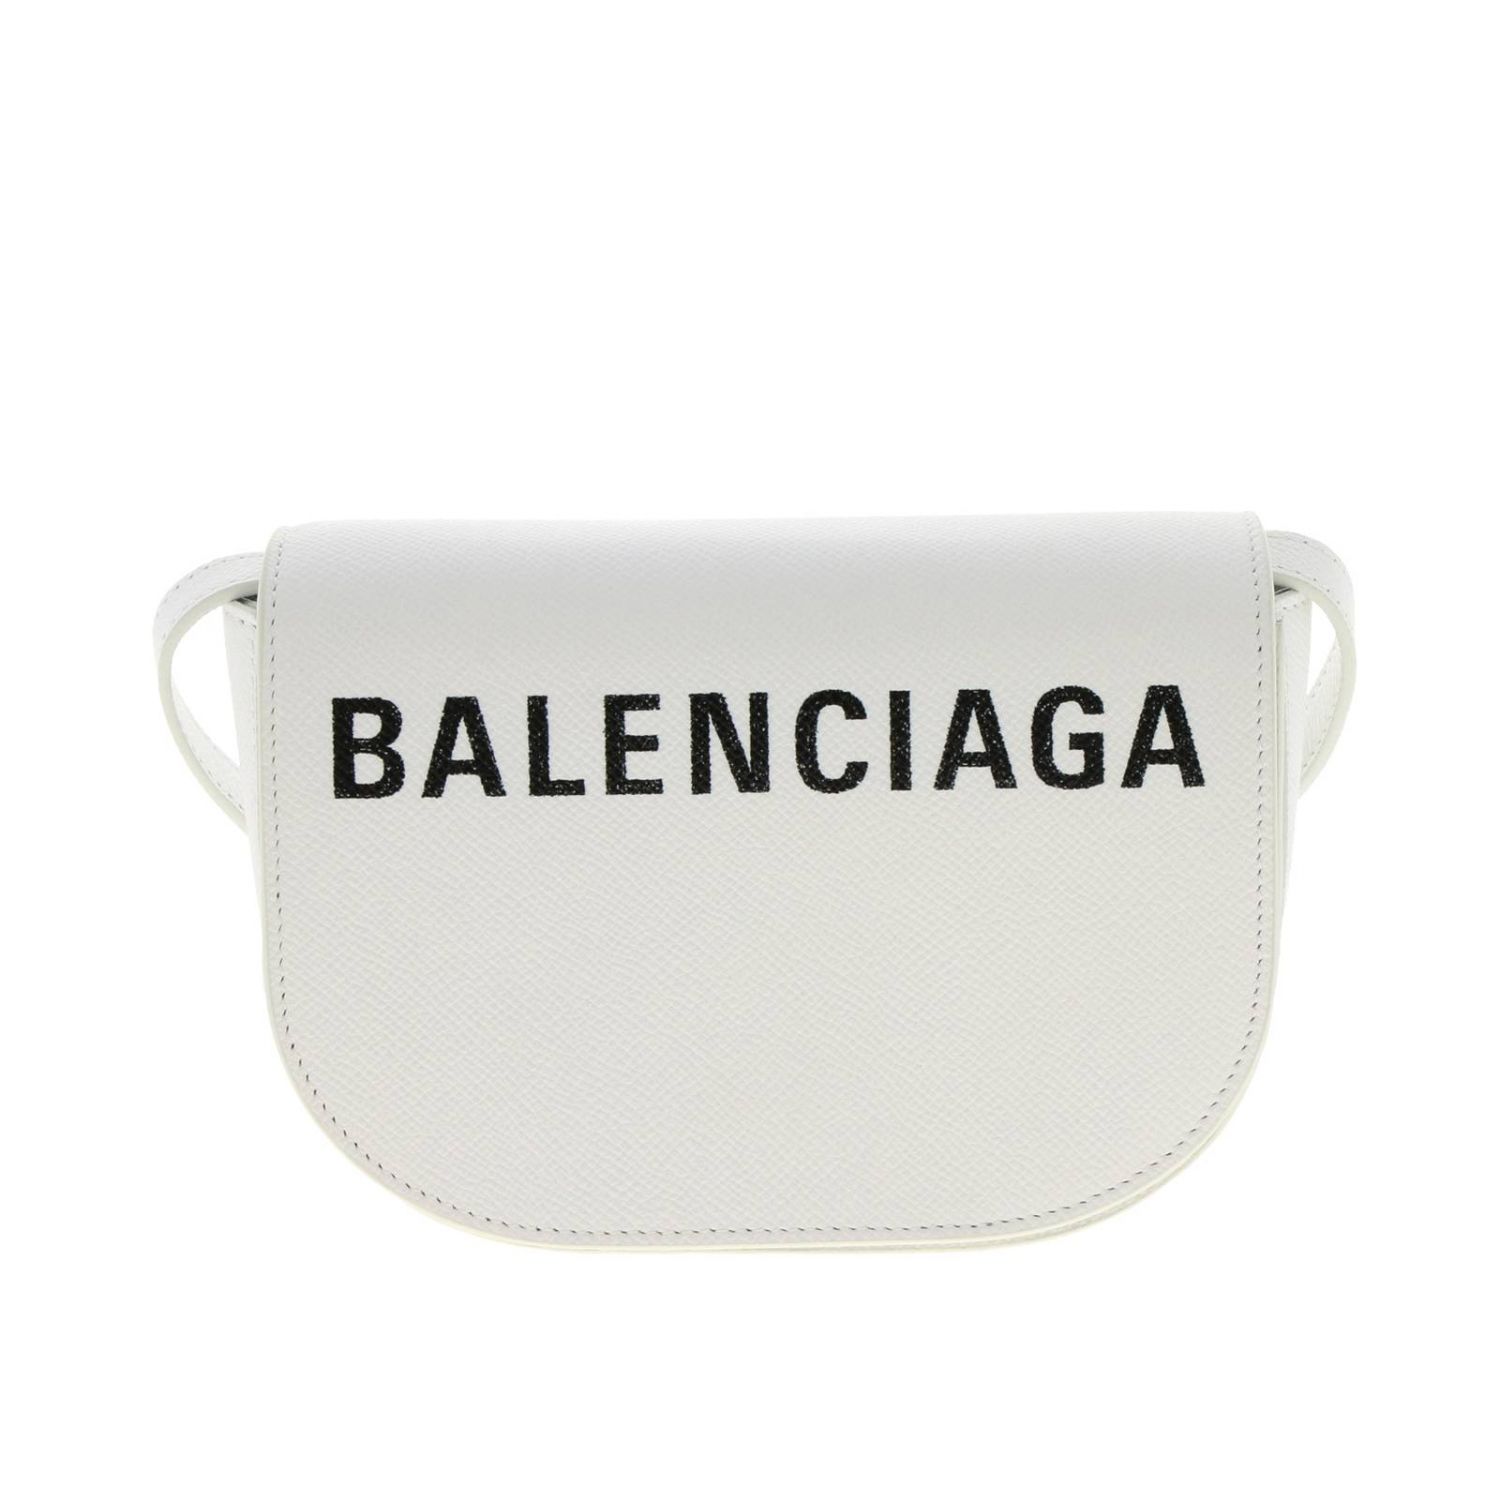 Crossbody bags women Balenciaga | Crossbody Bags Balenciaga Women White ...